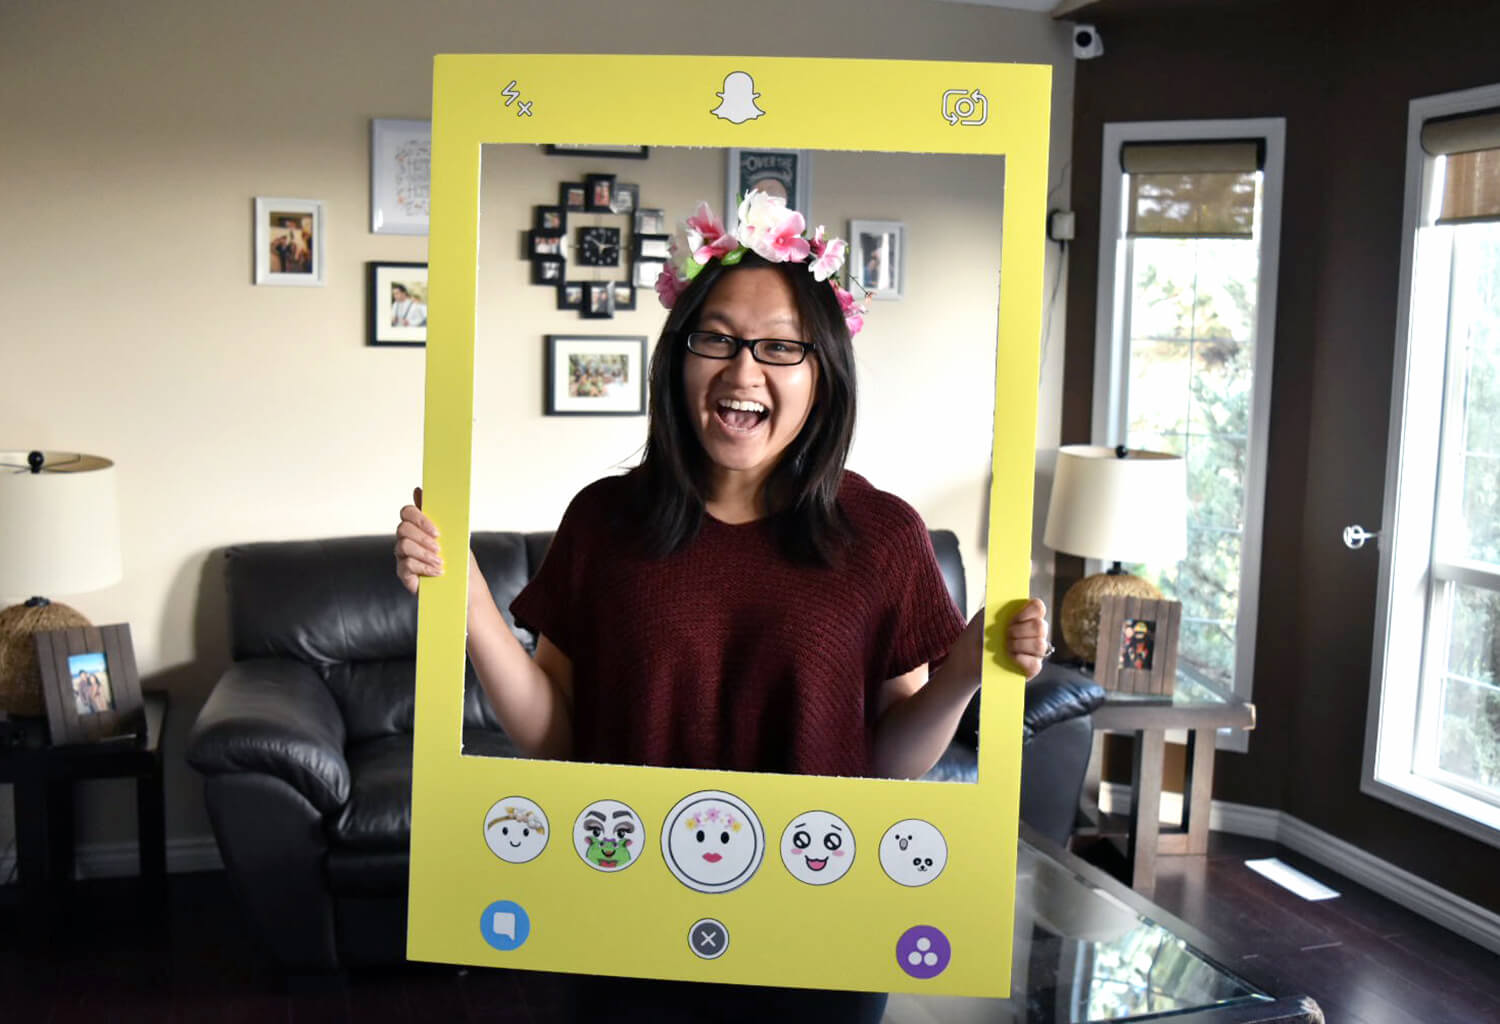 Snapchat Filter Social Media Halloween Costume